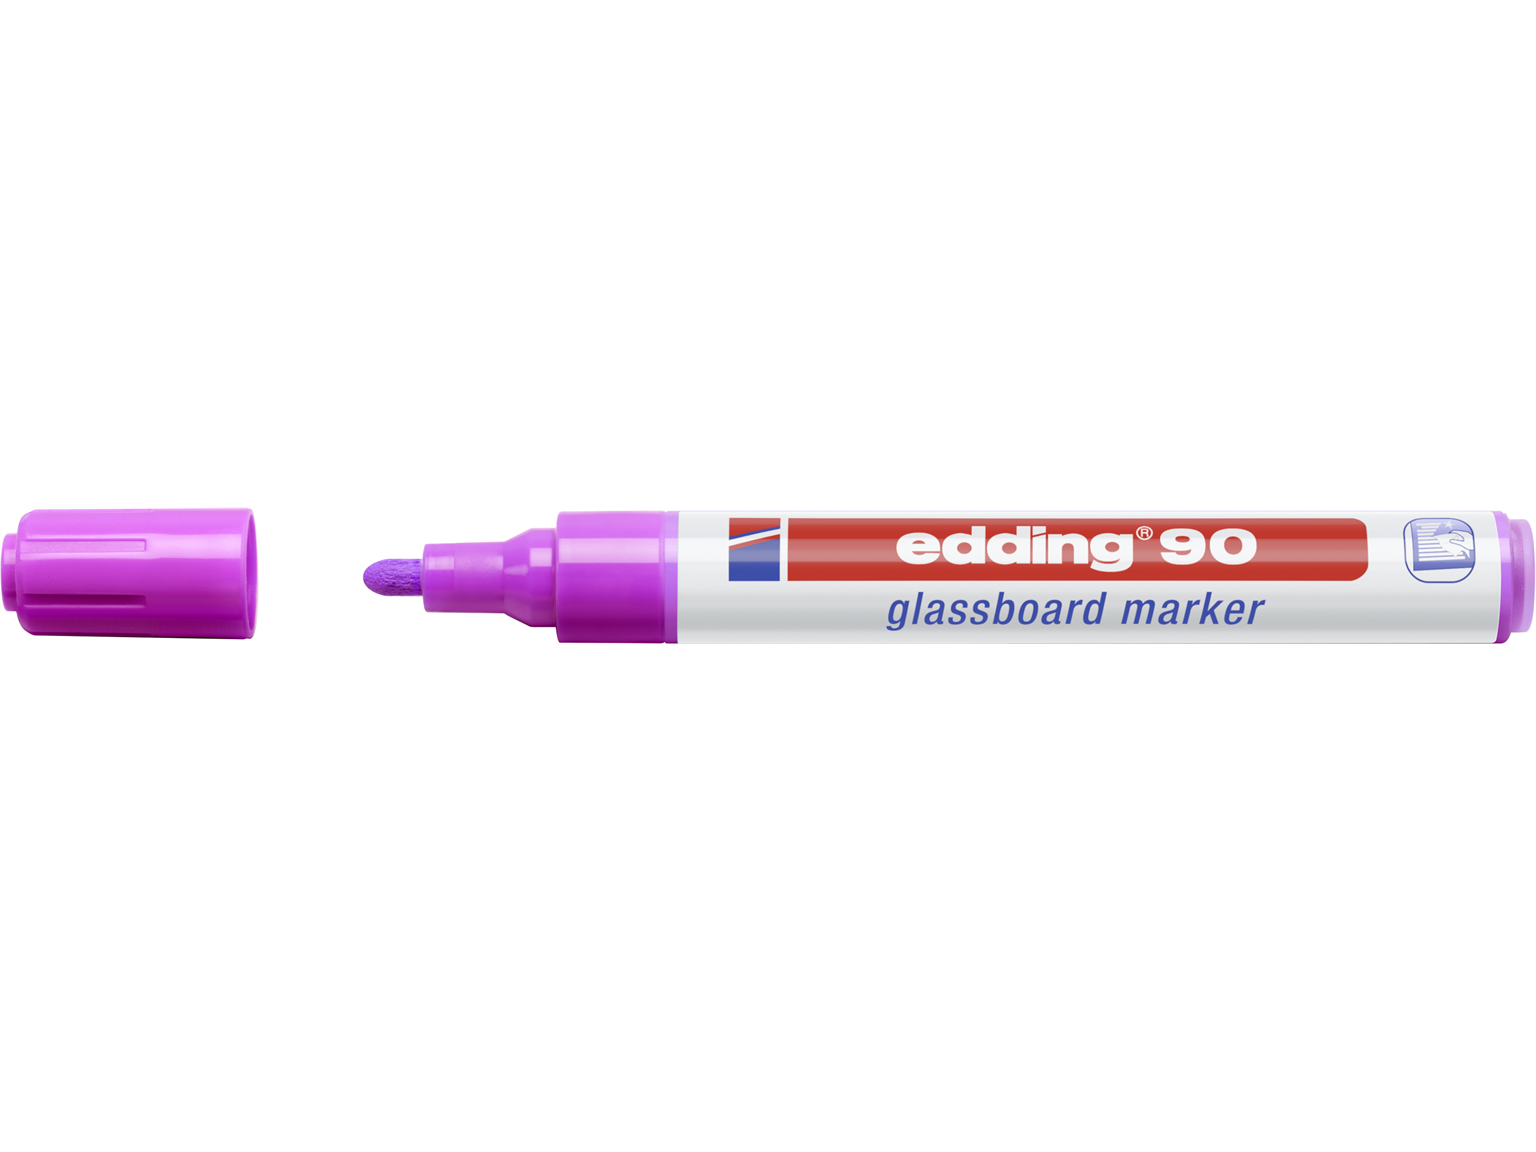 DEKOMARKER EDDING  edding Glassboardmarker 90 violett